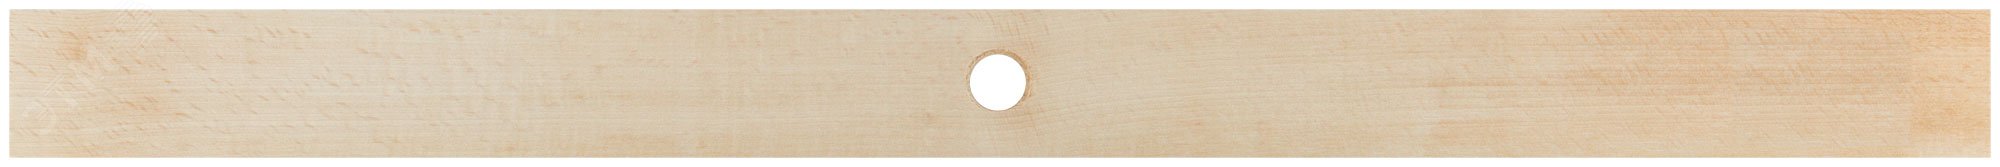 Щетка для пола деревянная наклонная ''Метро'', 5-ти рядная, 600 мм 68043 КУРС РОС - превью 4